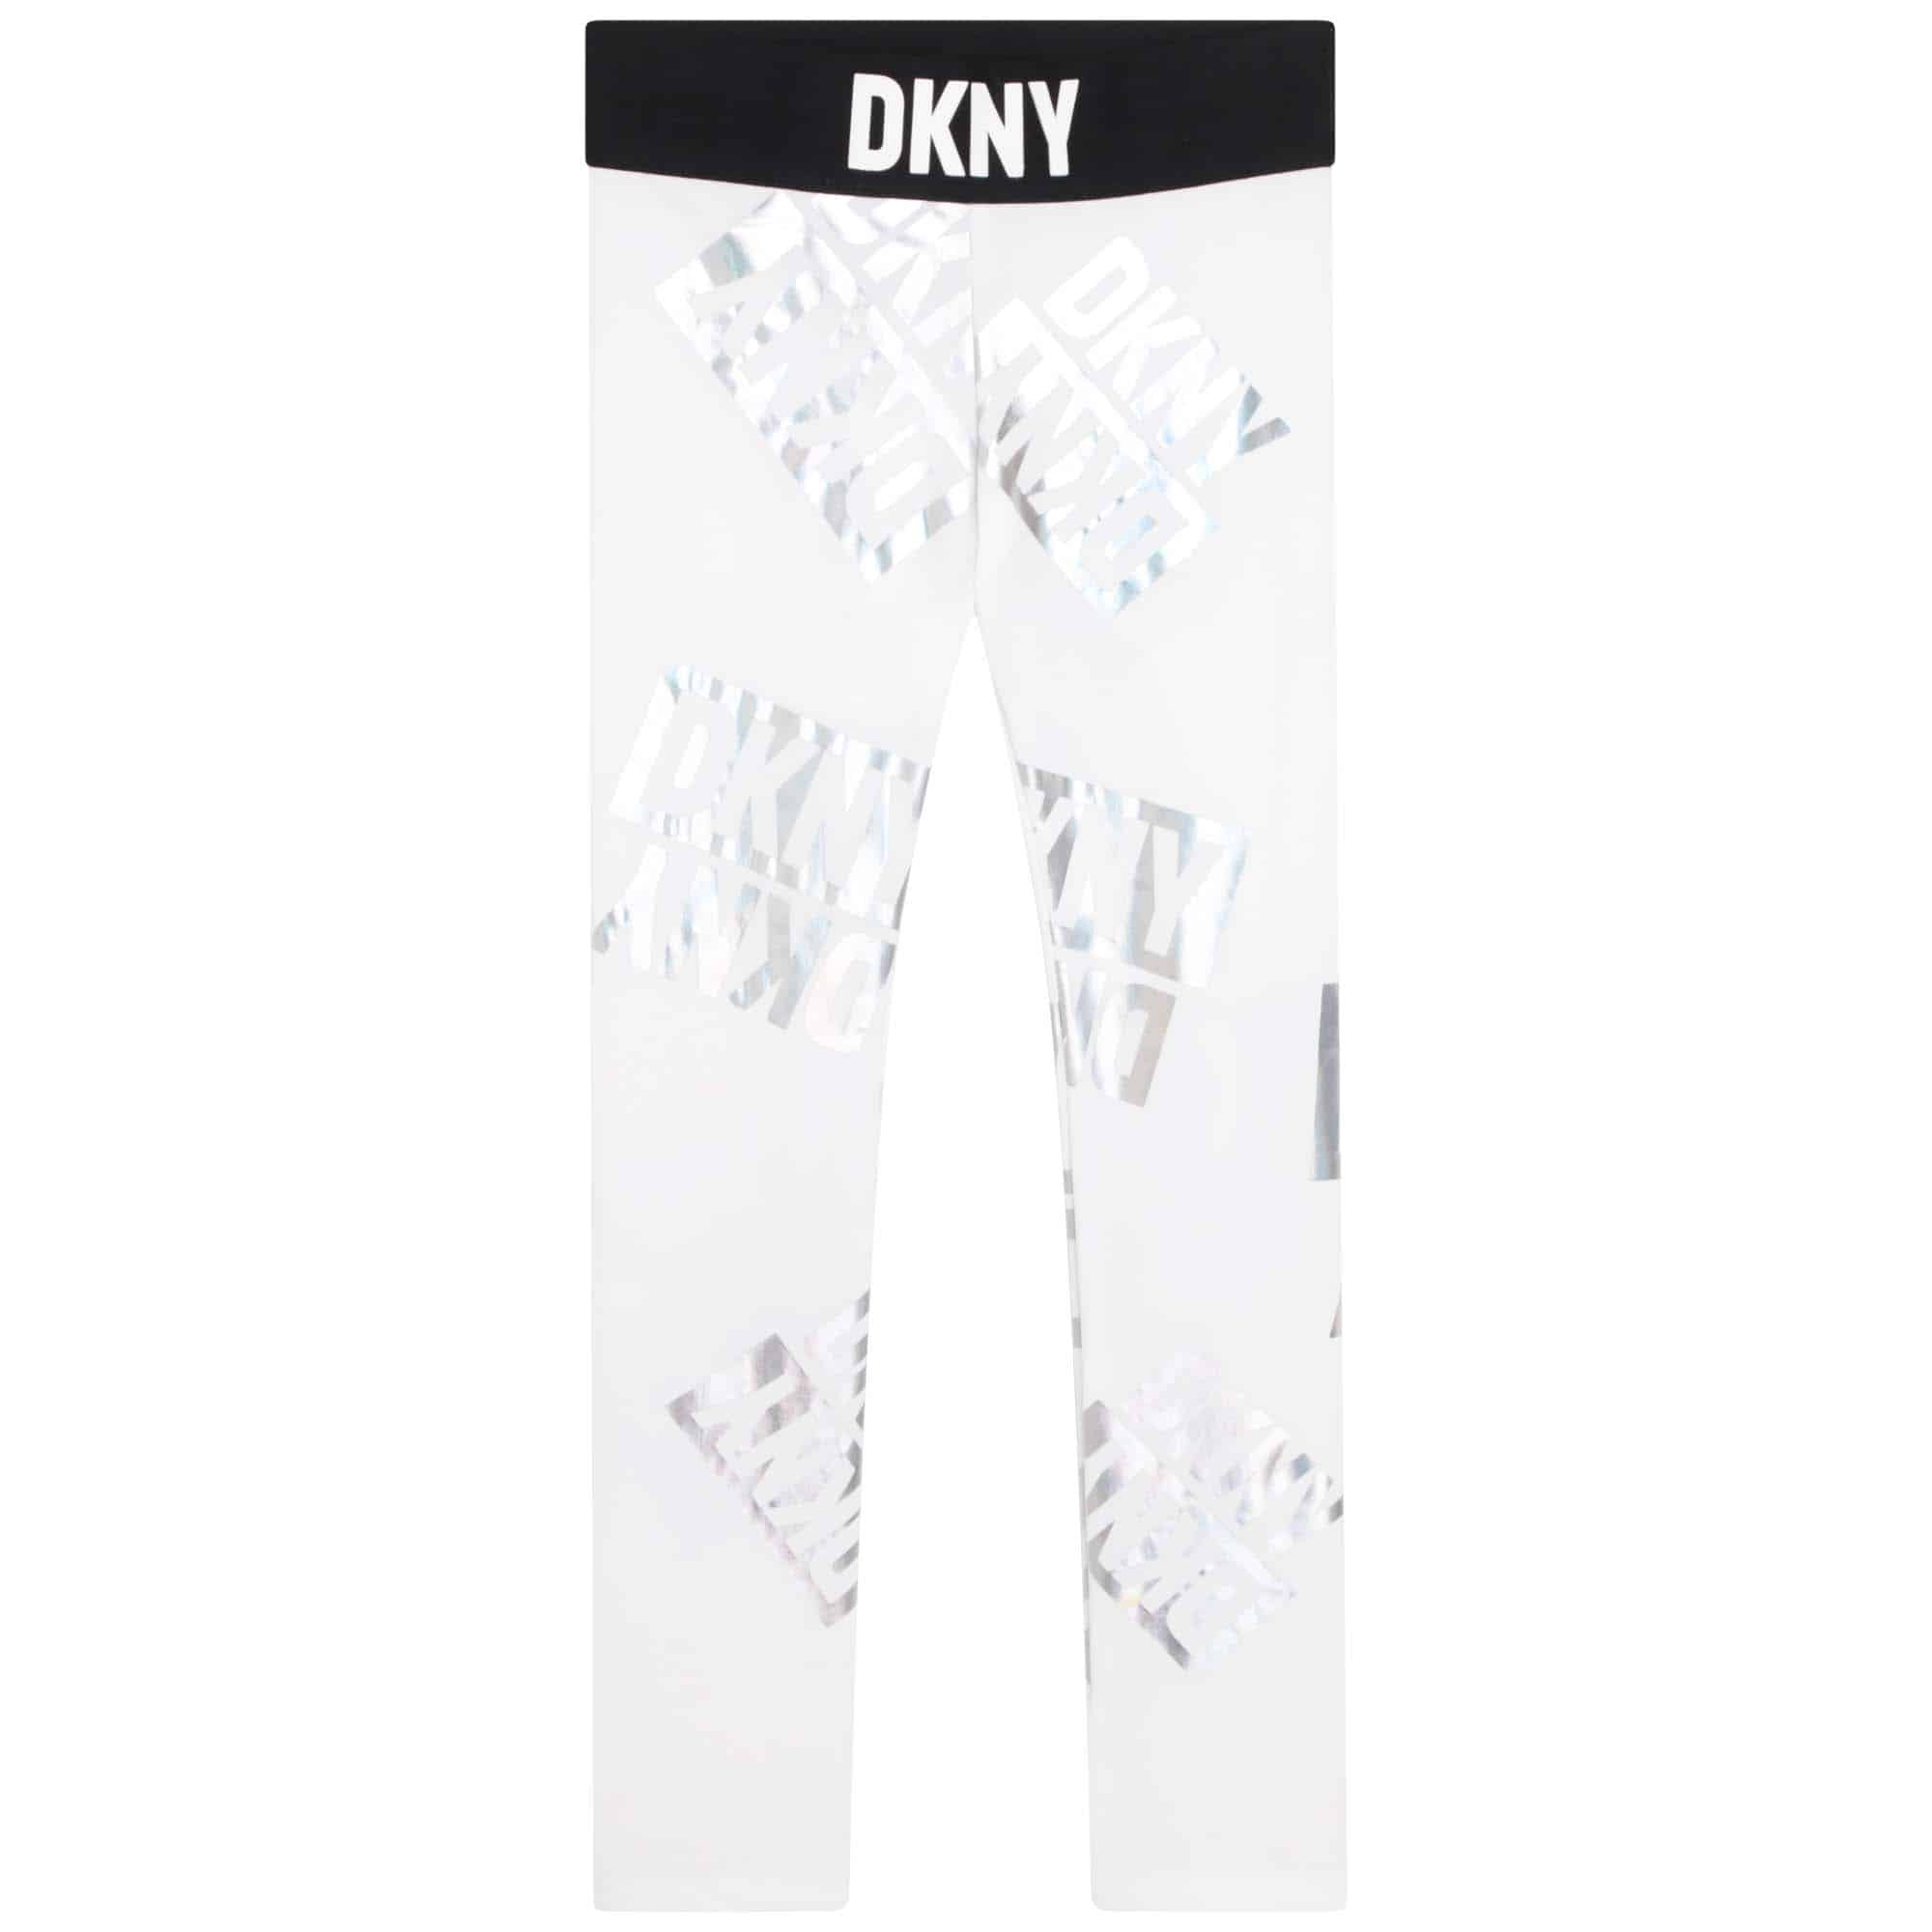 DKNY girls black and white leggings